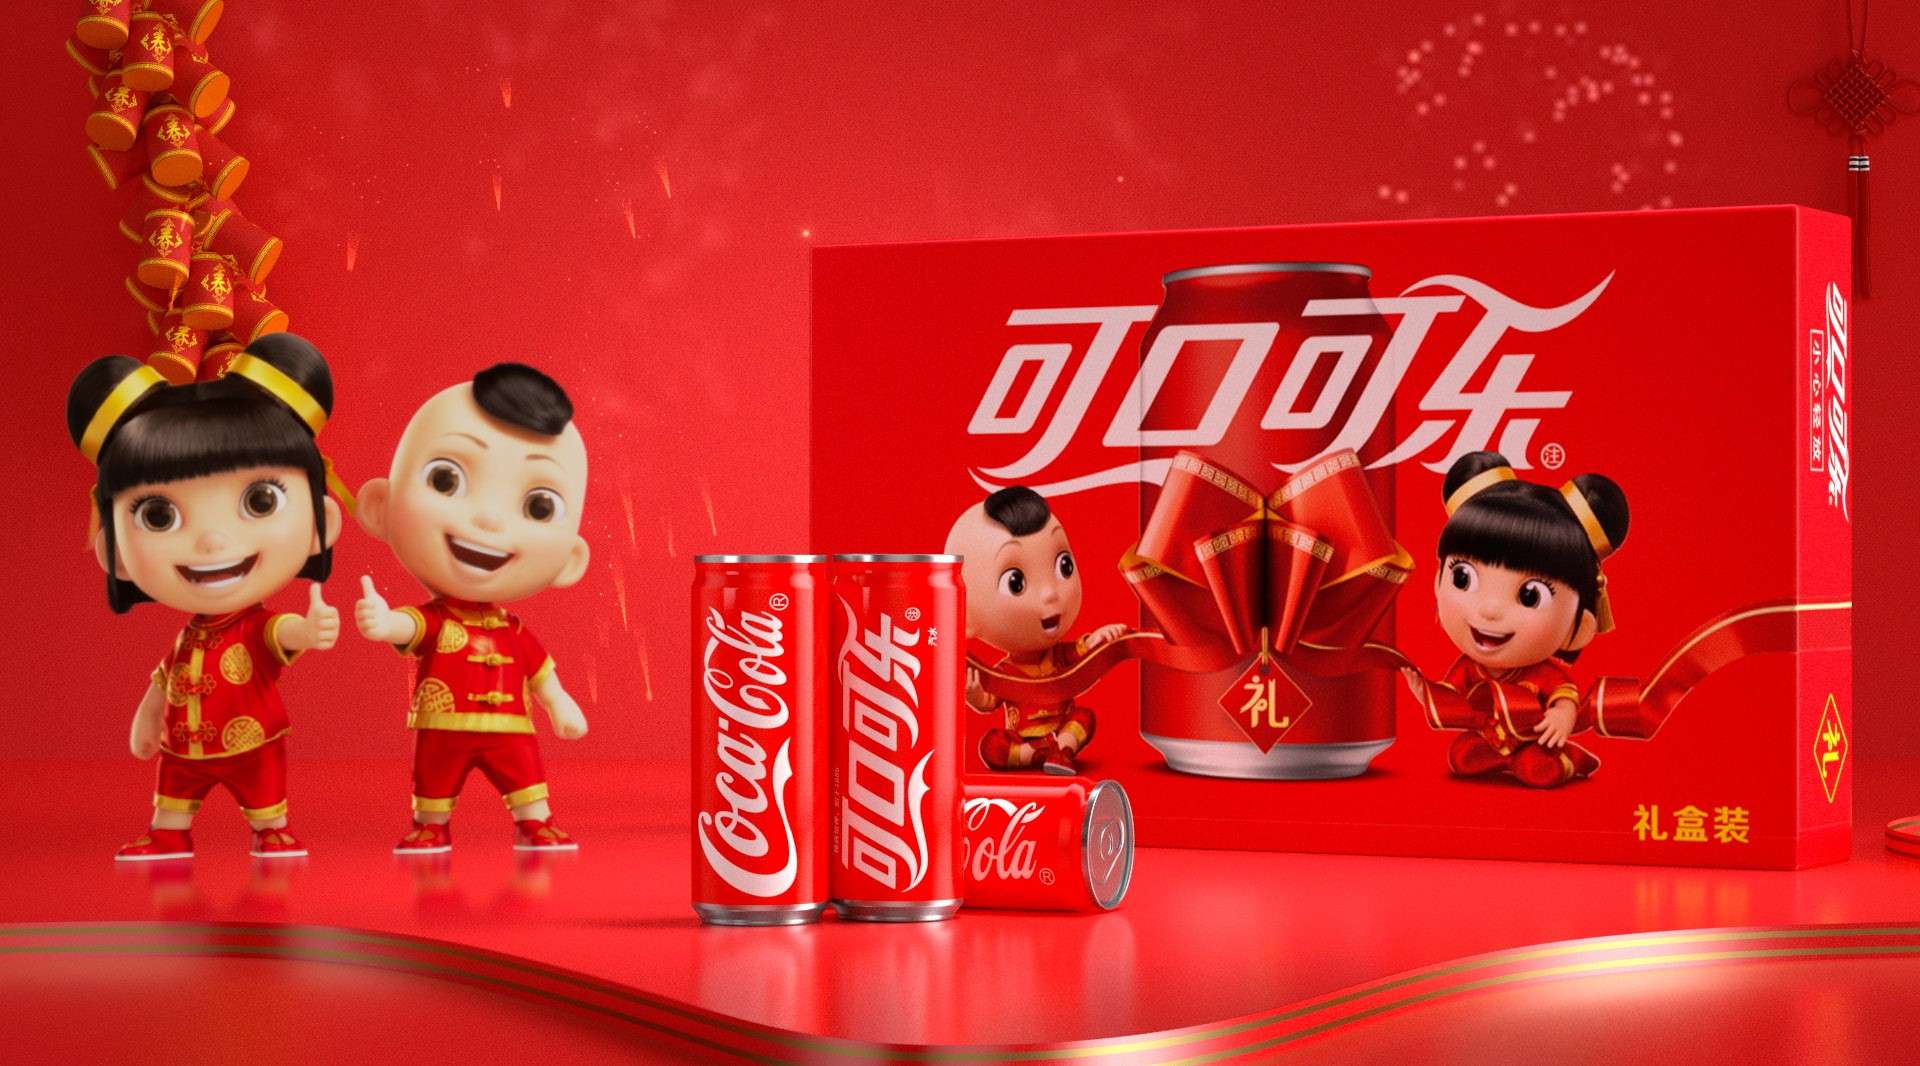 可口可乐新年产品创意广告 | SIG品牌广告